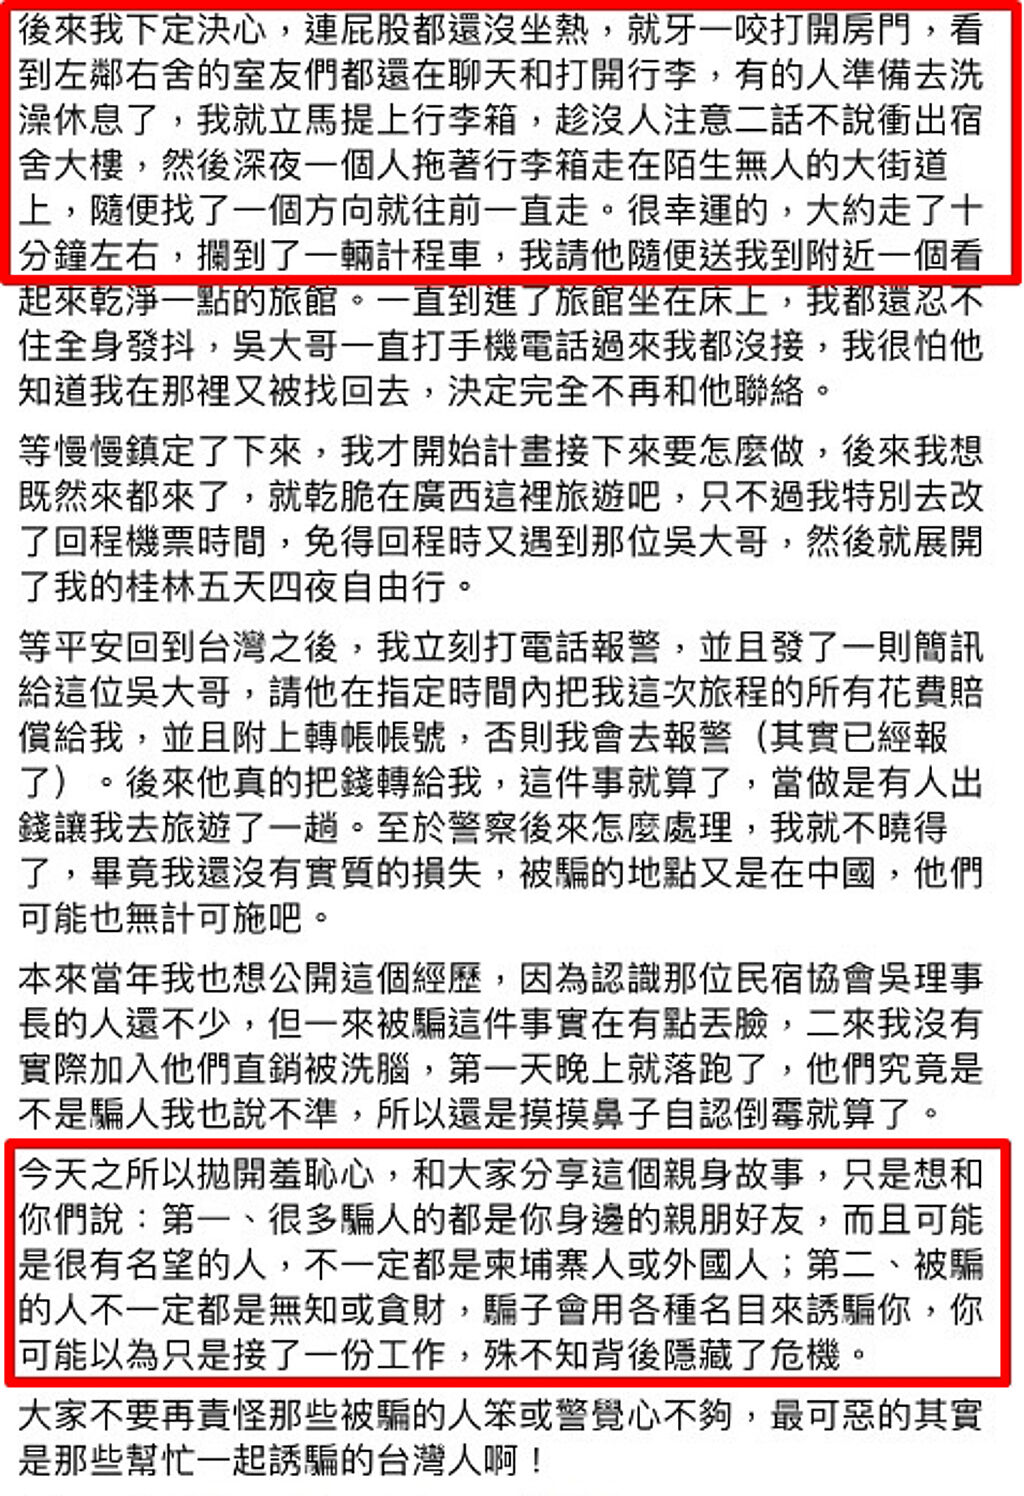 社群行銷講師權自強分享自己多年前遭1名在台灣的理事長邀約至杭州演講，沒想到下機後才發現全是騙局，他當時直接逃出旅館，回台報警，逃亡過程曝光。（翻攝自權自強臉書）